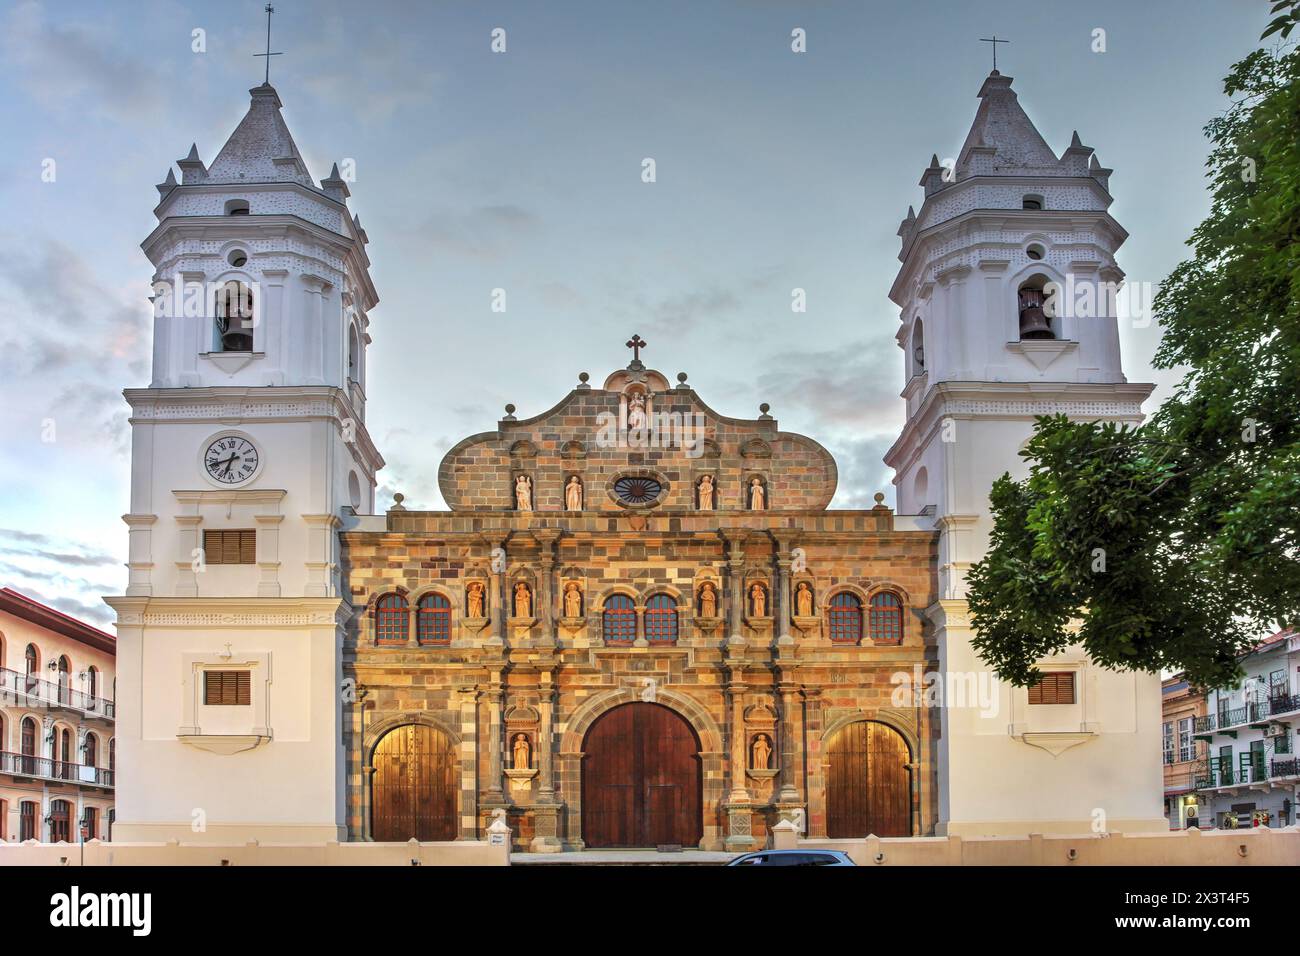 Soirée sur la place Casco Antiguo avec la cathédrale métropolitaine de Panama, Santa Maria la Antigua, Panama City. Banque D'Images